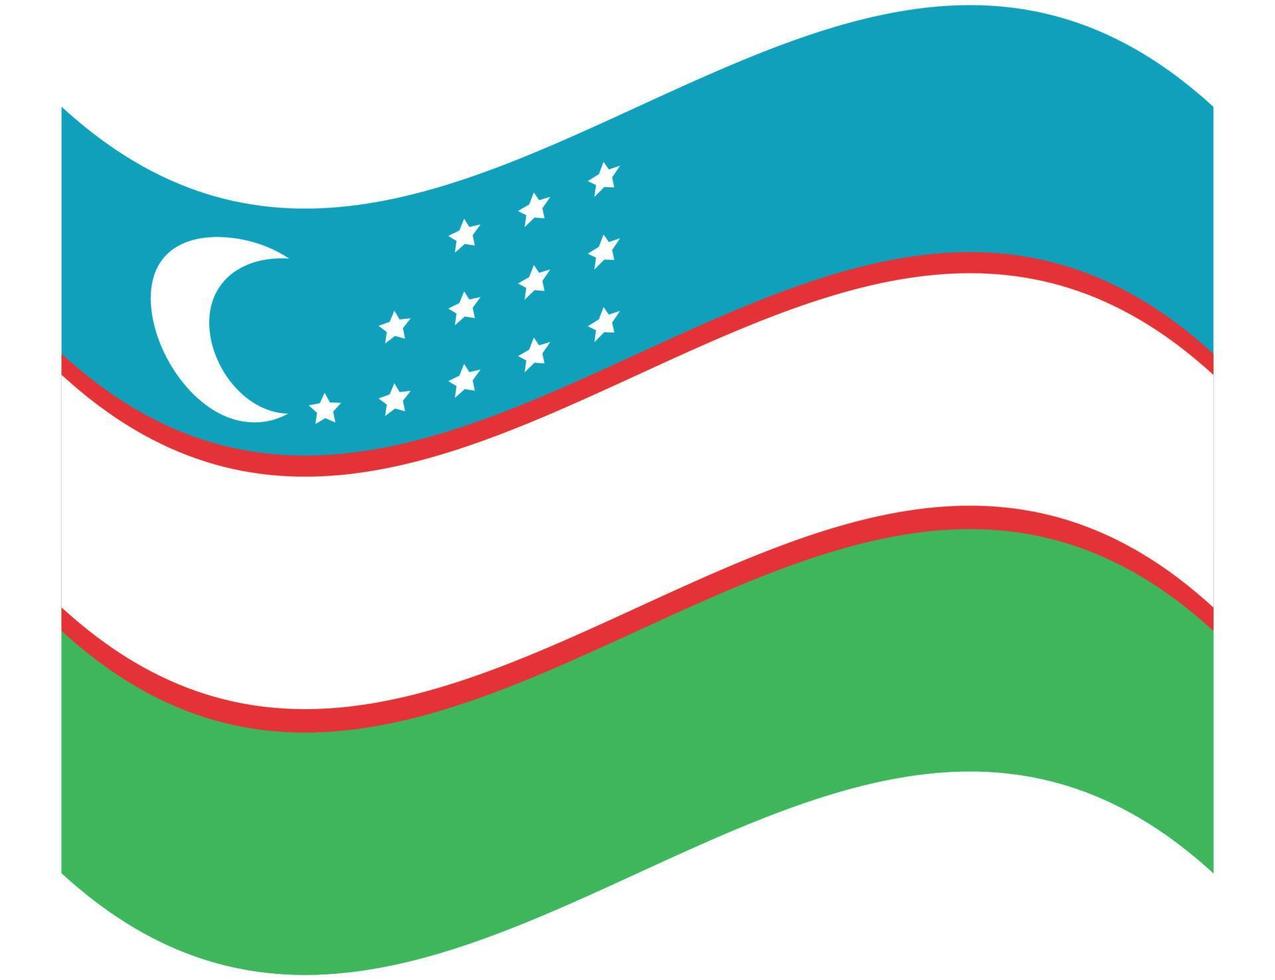 bandeira de ilustração do ícone do Uzbequistão. bandeira nacional do Uzbequistão. vetor